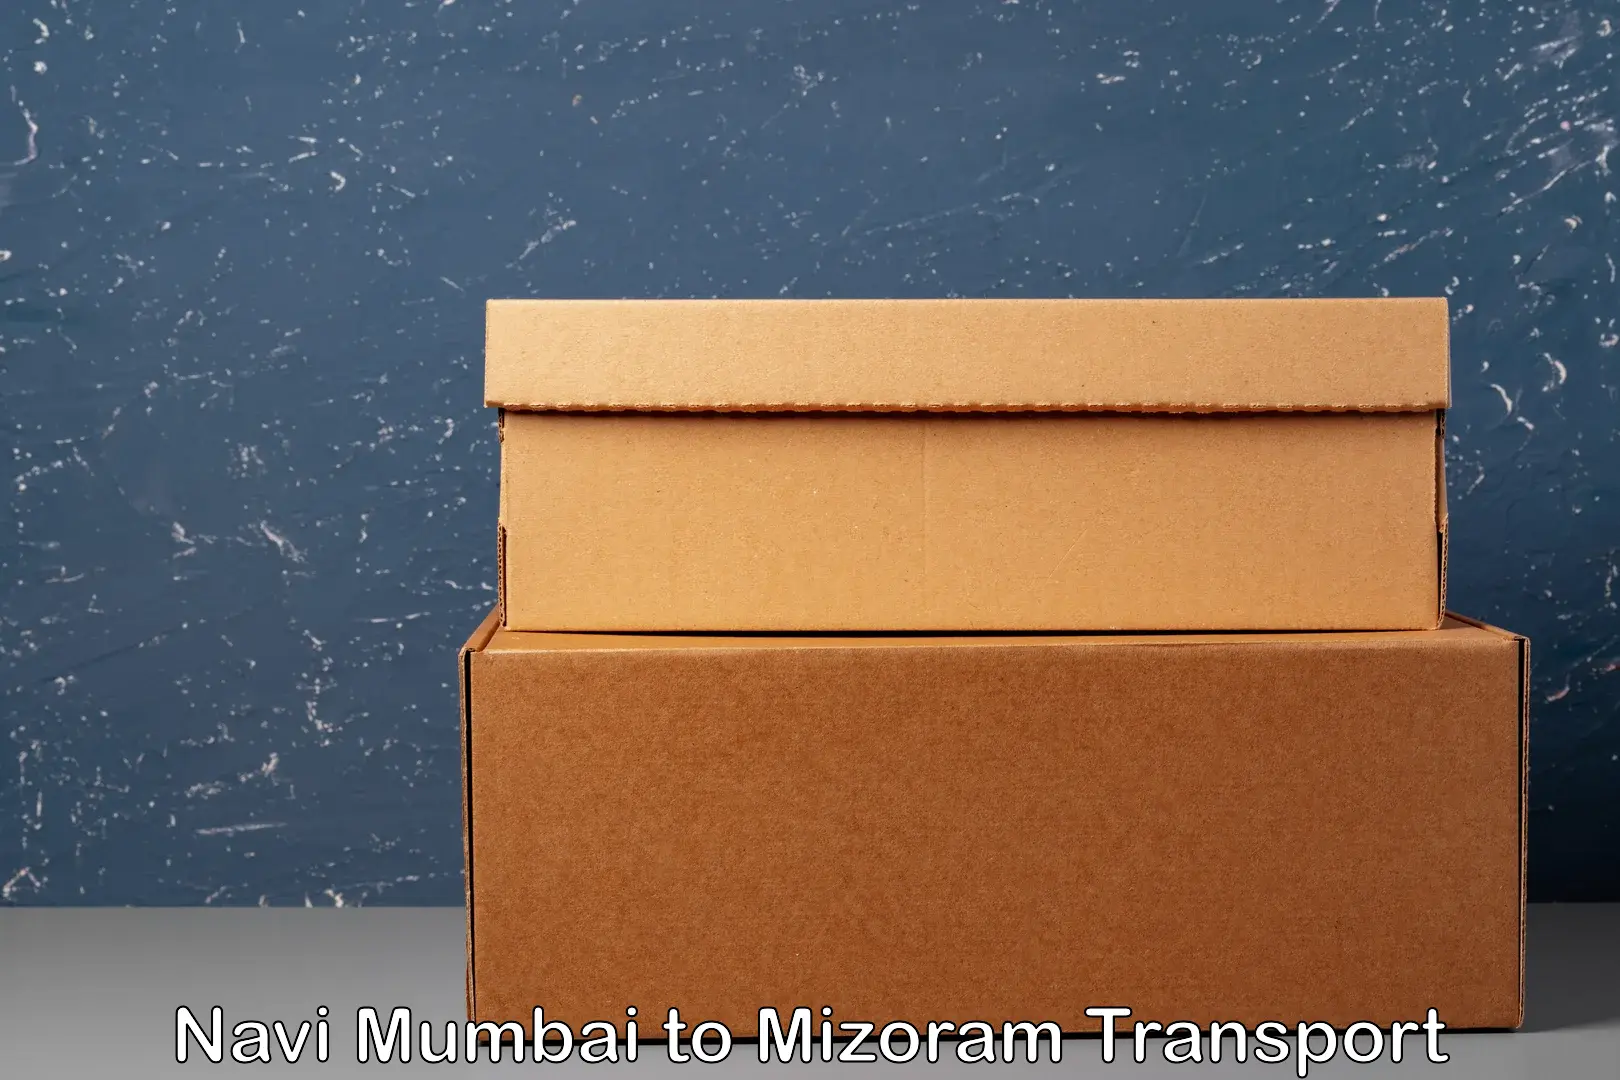 Cargo transport services Navi Mumbai to Lunglei